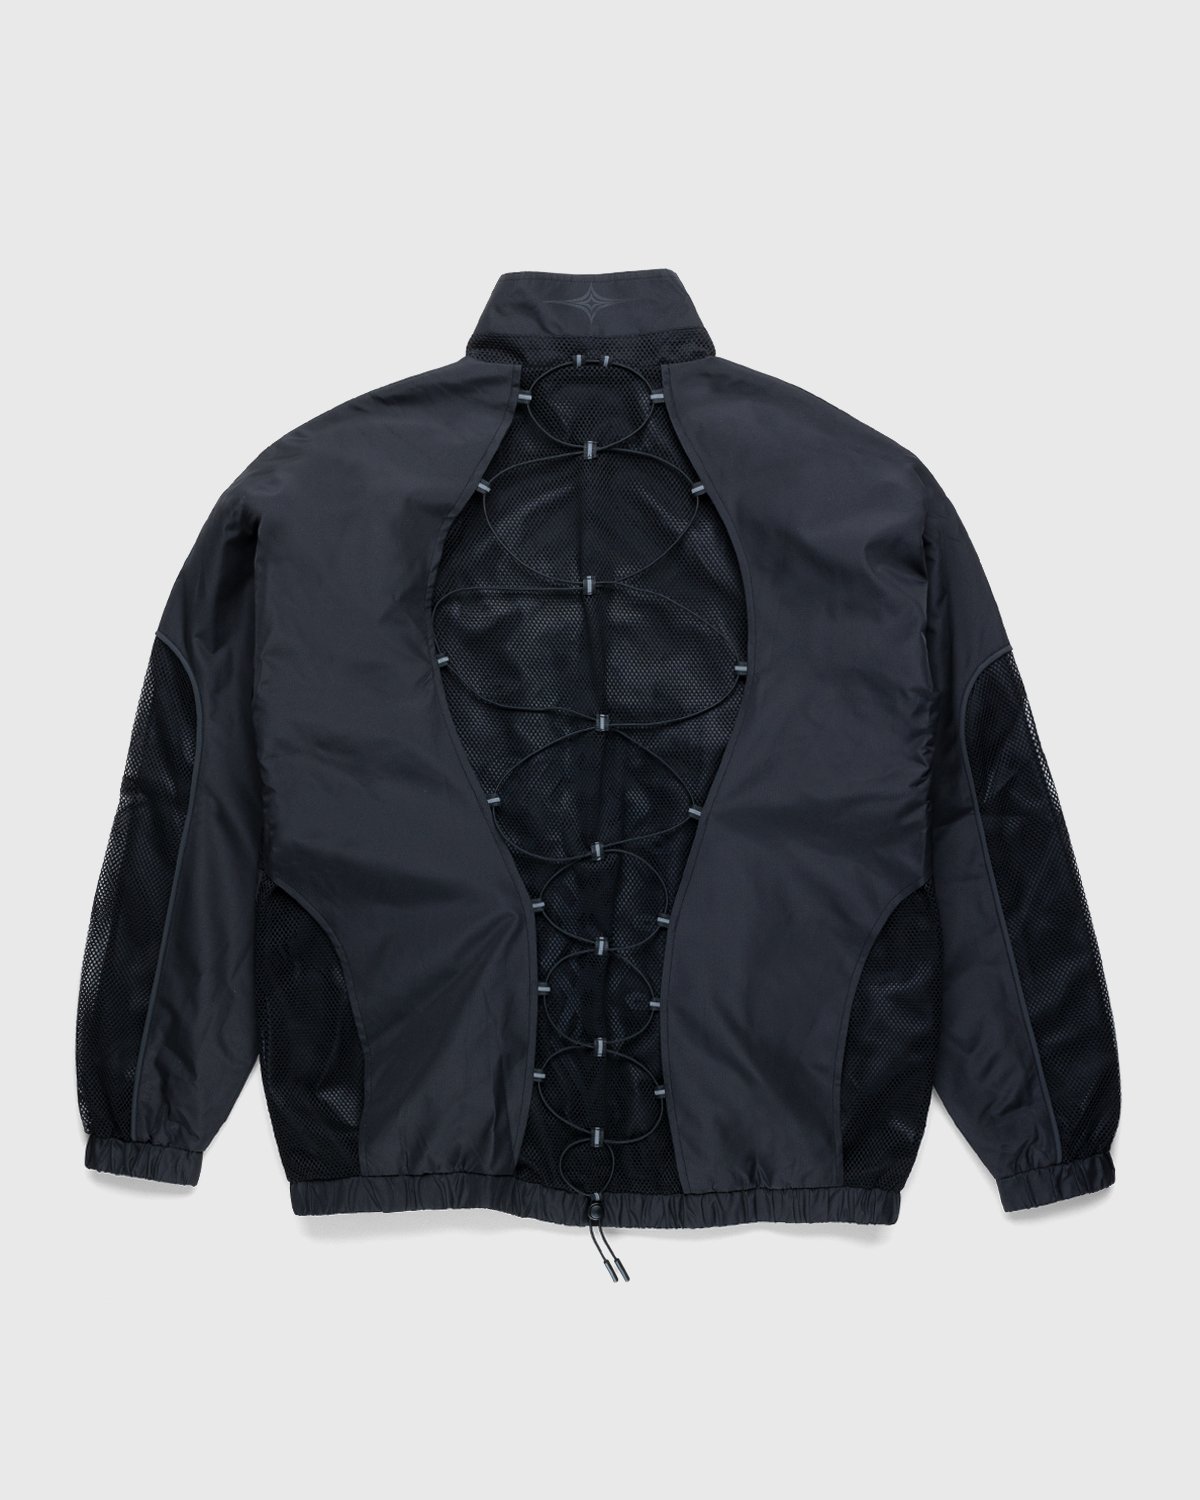 Umbro x Sucux - Zenomorph Jacket Black - Clothing - Black - Image 2